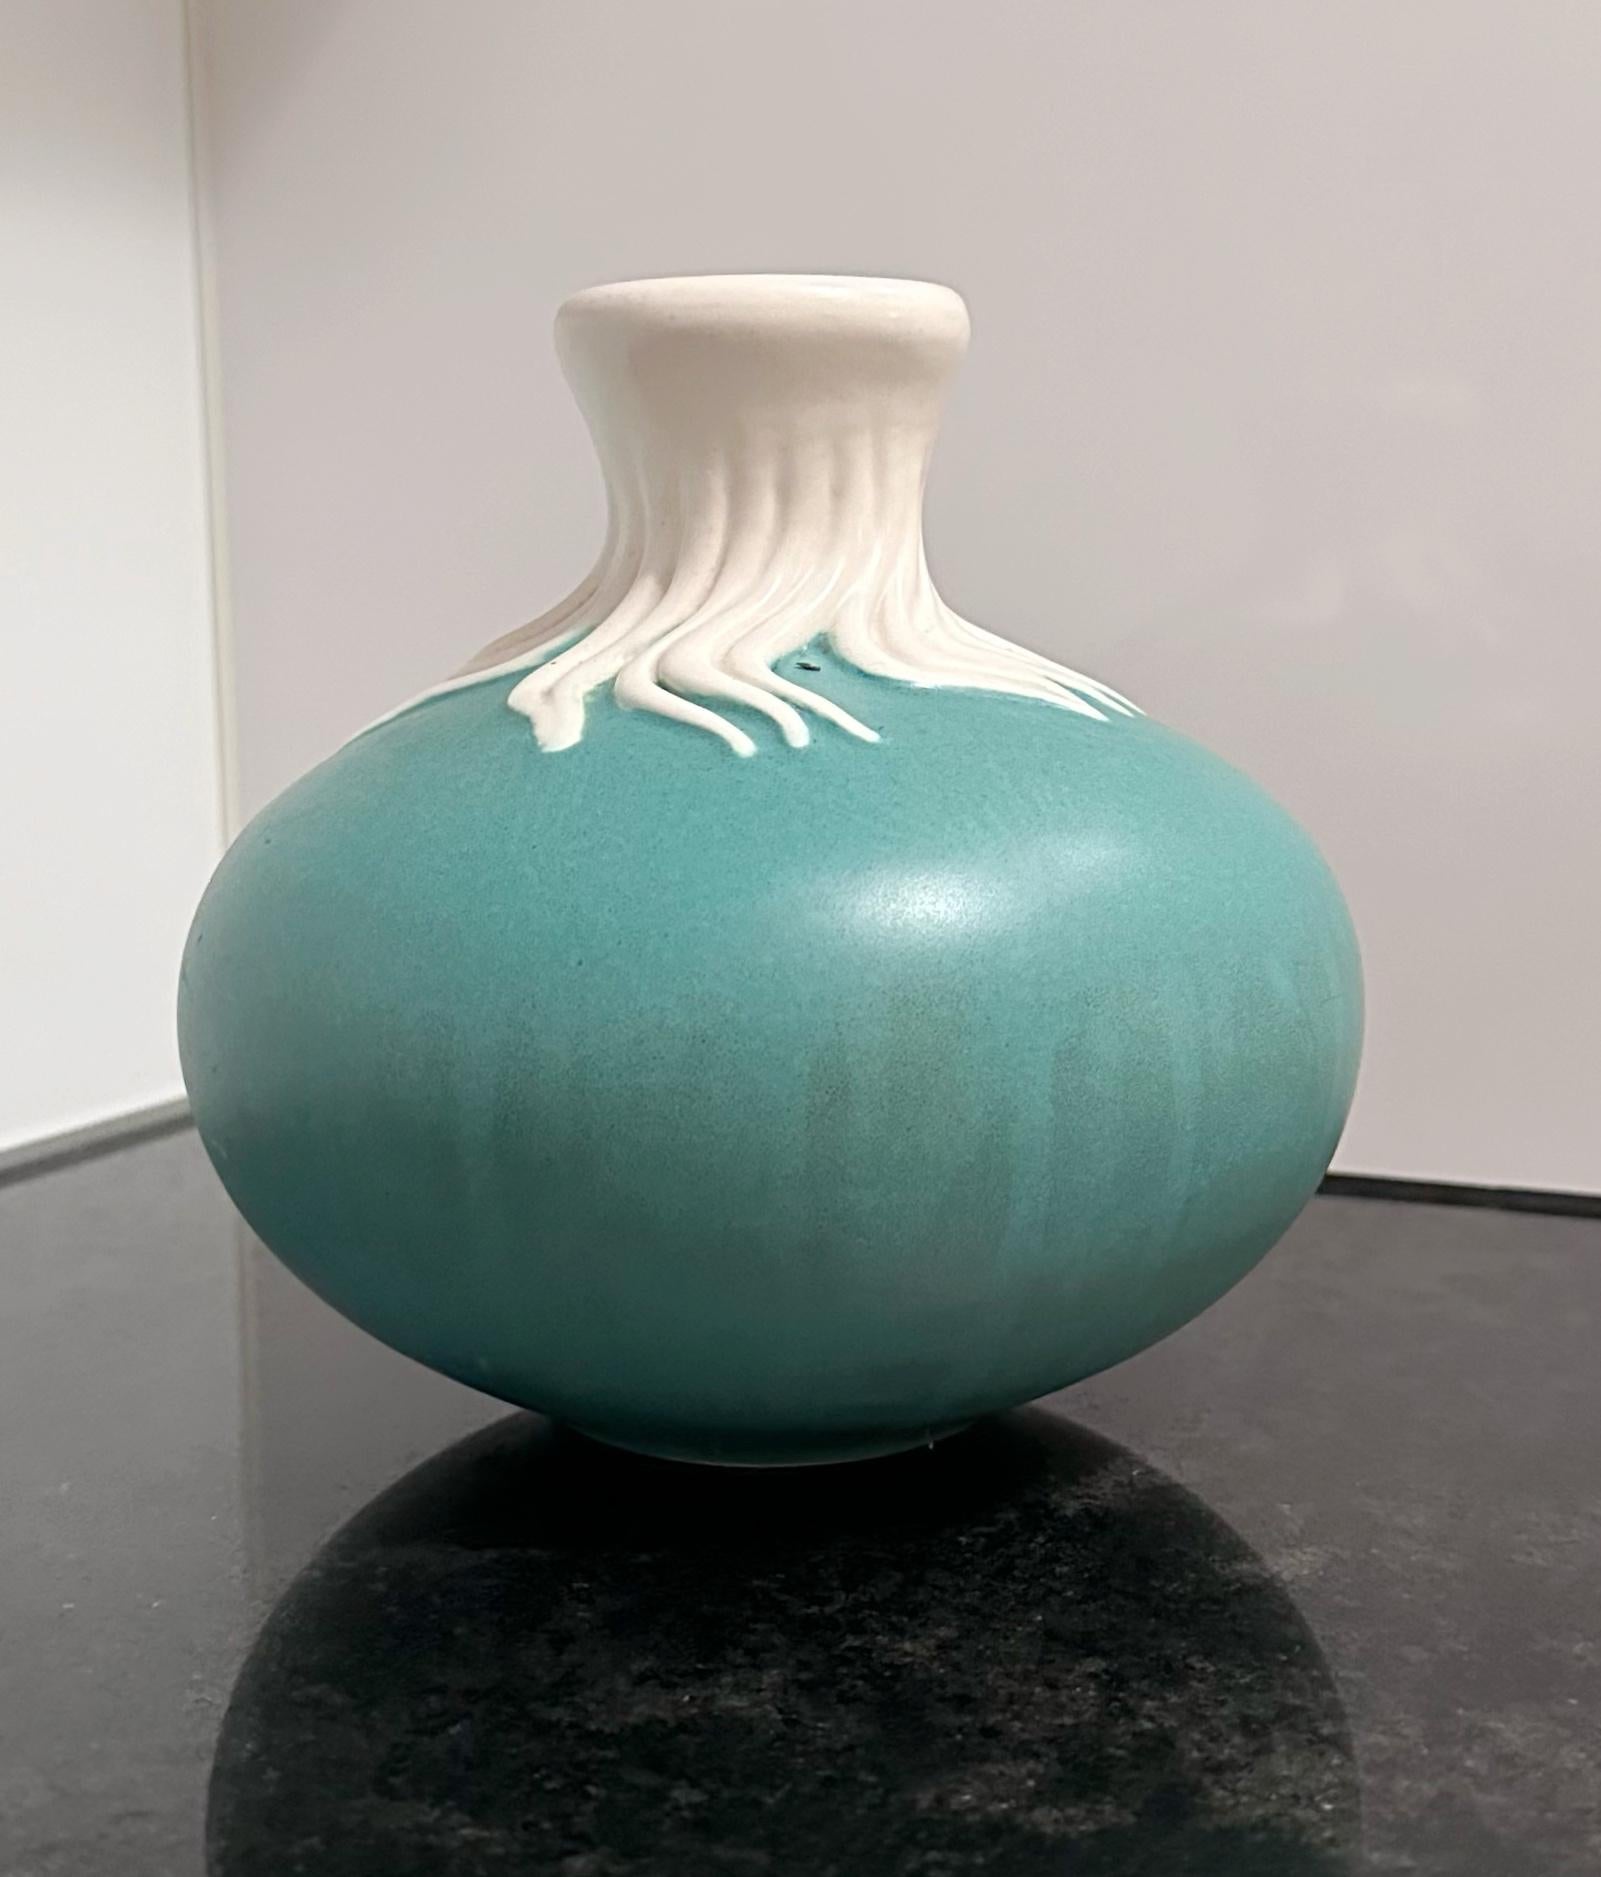 Giovanni Gariboldi
Blaue und weiße Vase Modell 